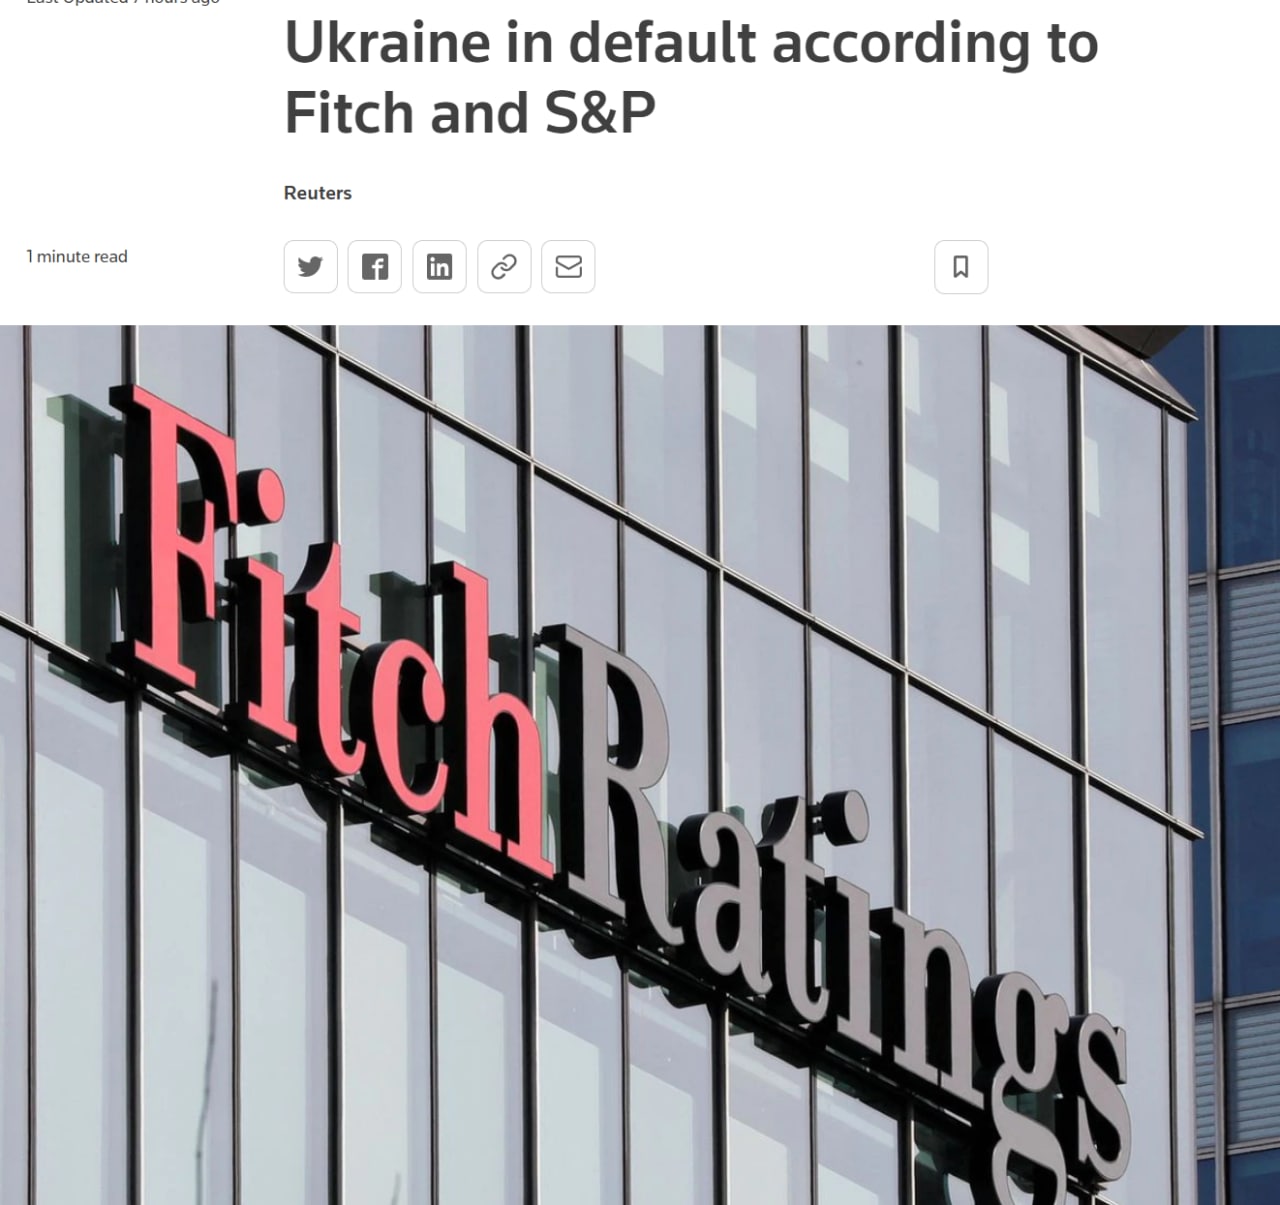 Украина объявила дефолт, - глобальные рейтинговые агентства S&P и Fitch